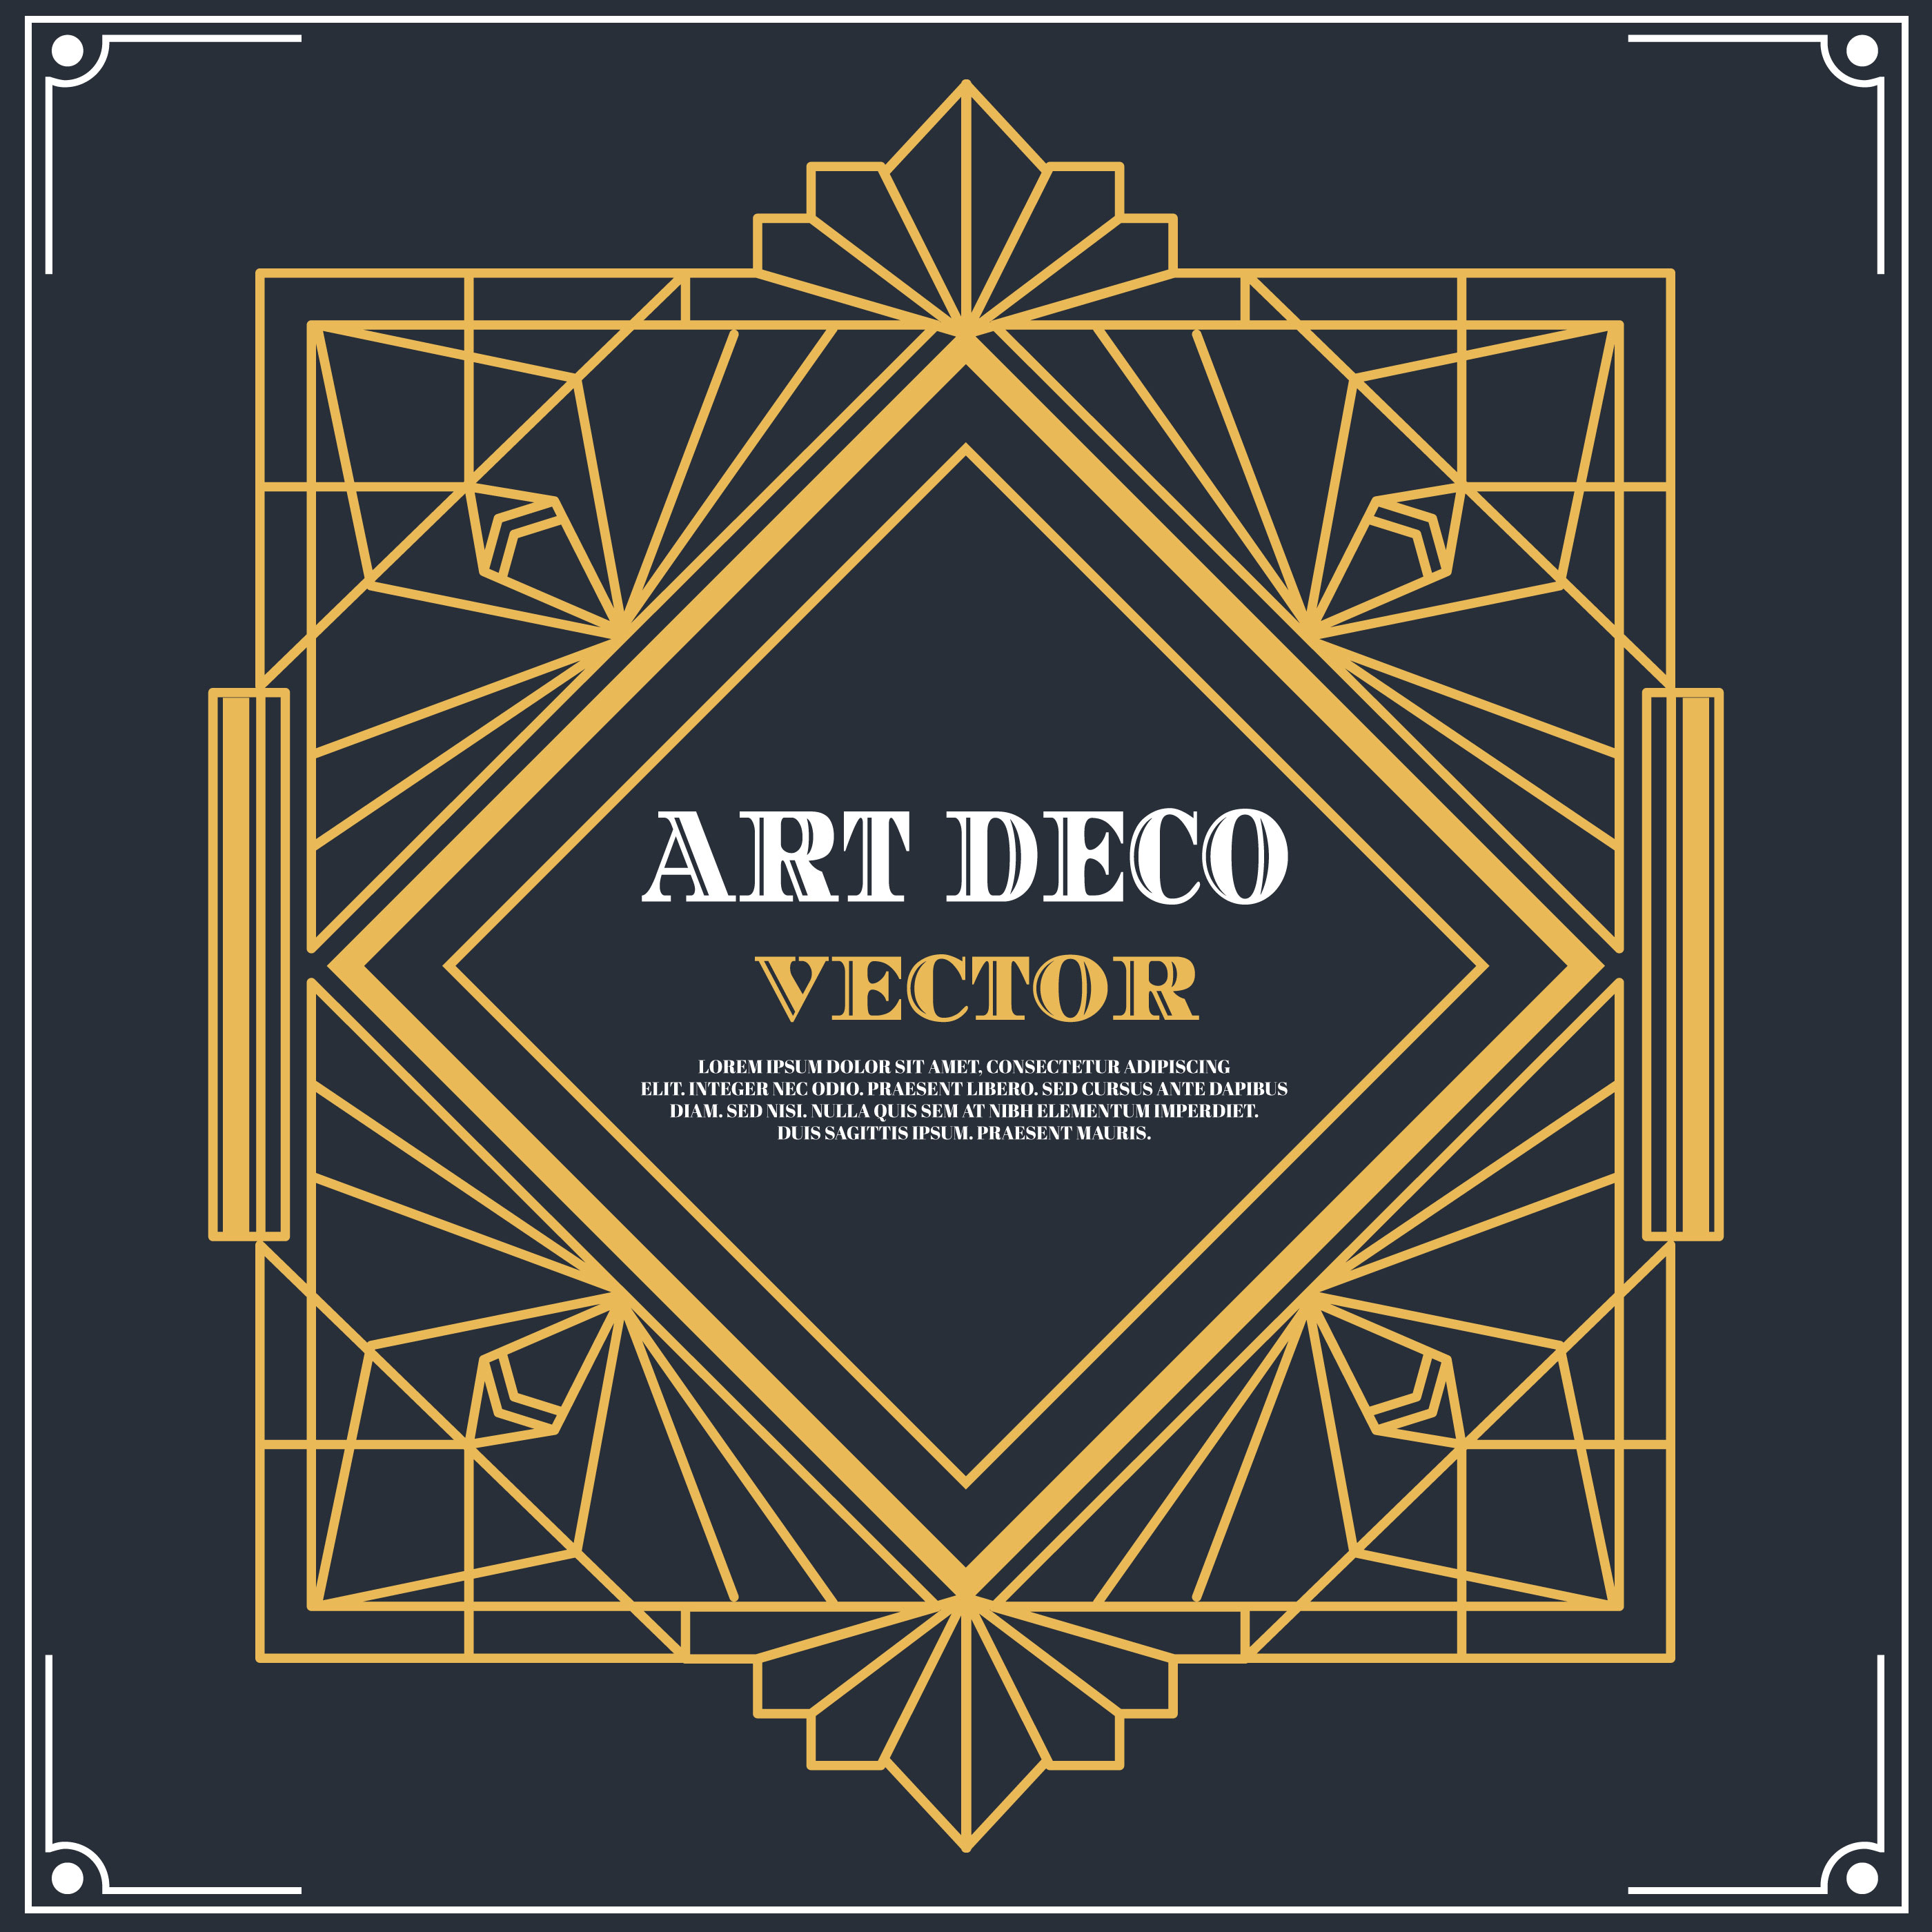  Art Deco  Label Vector Download Free Vector Art  Stock 